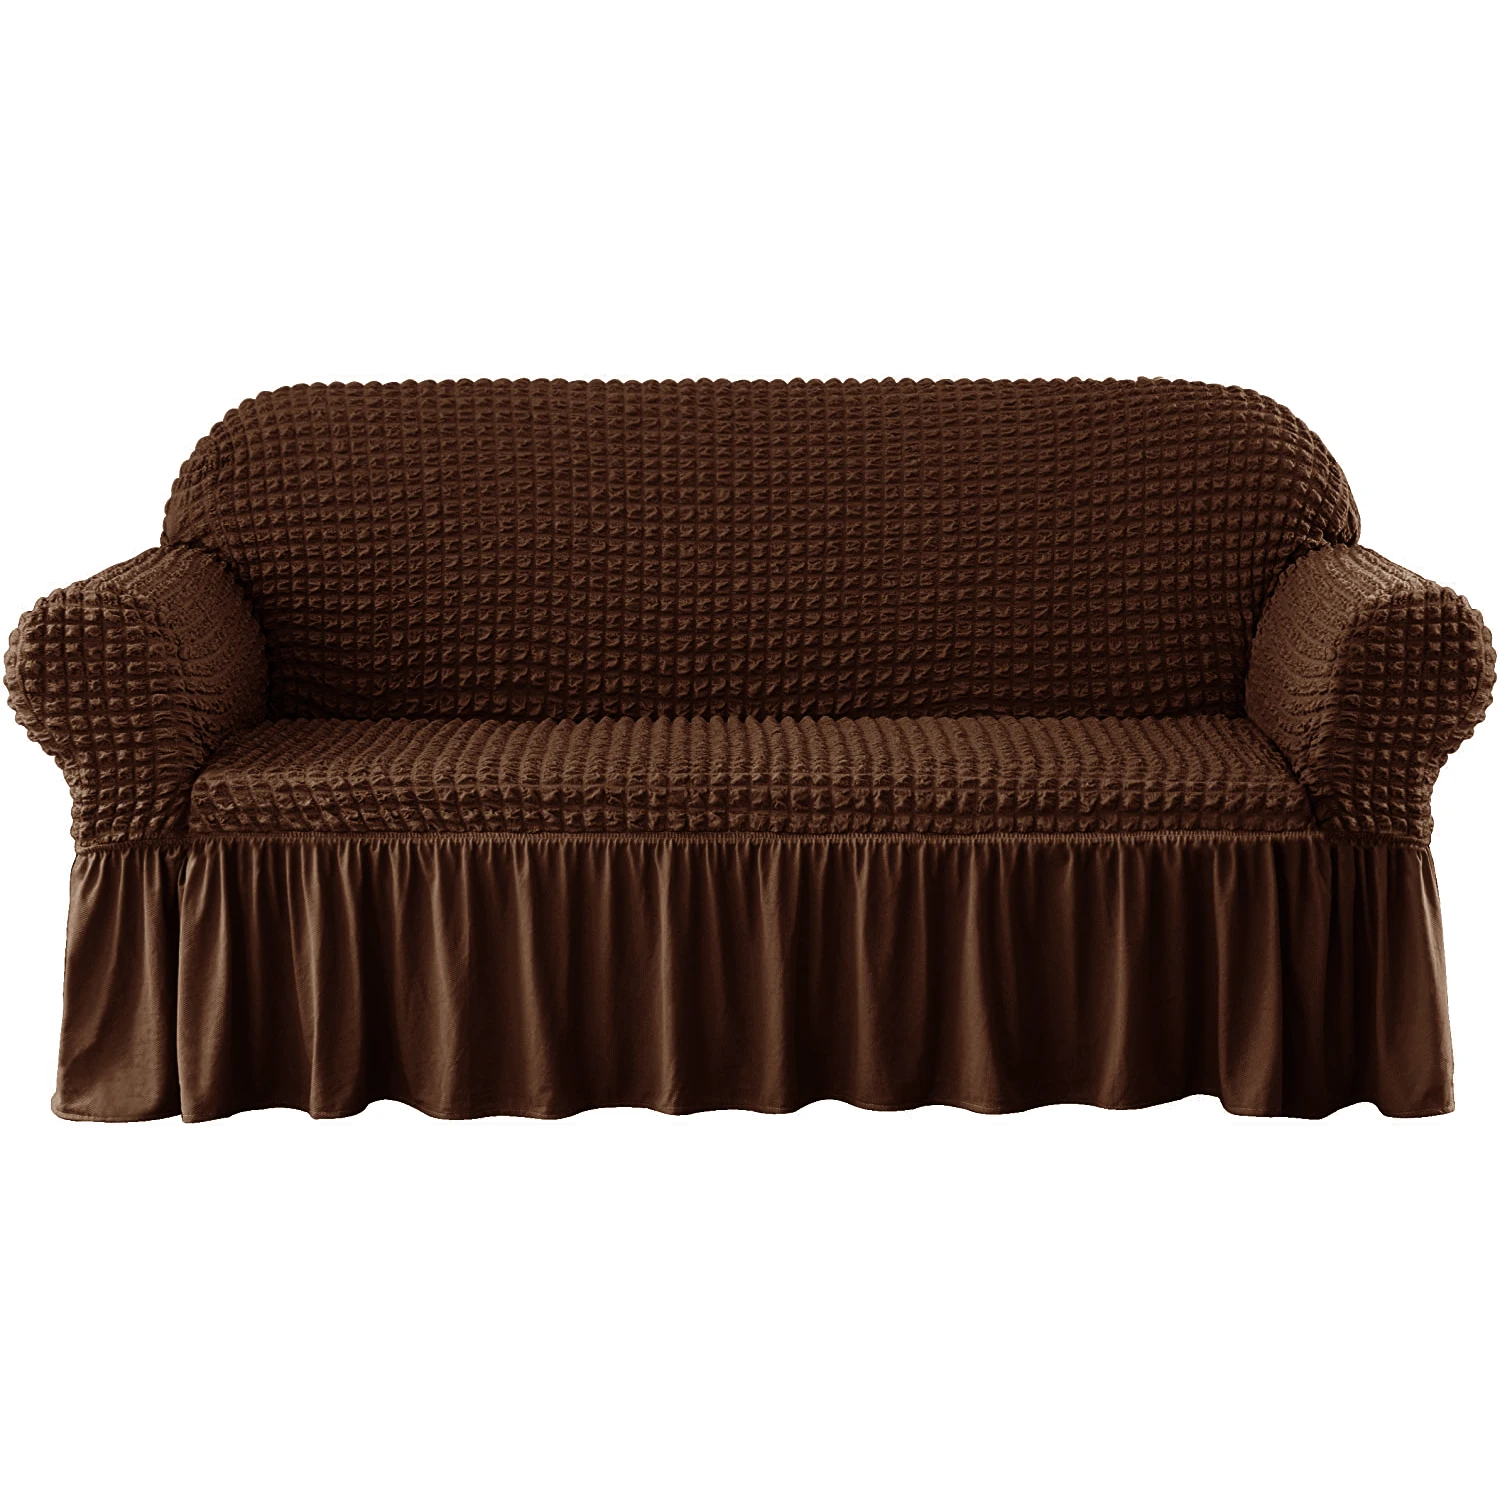 Крышка двухместная. Чехол диван с оборкой Картекс. Чехол на двухместный диван с подлокотниками. Чехол на диван шоколад. Чехол на диван коричневый.